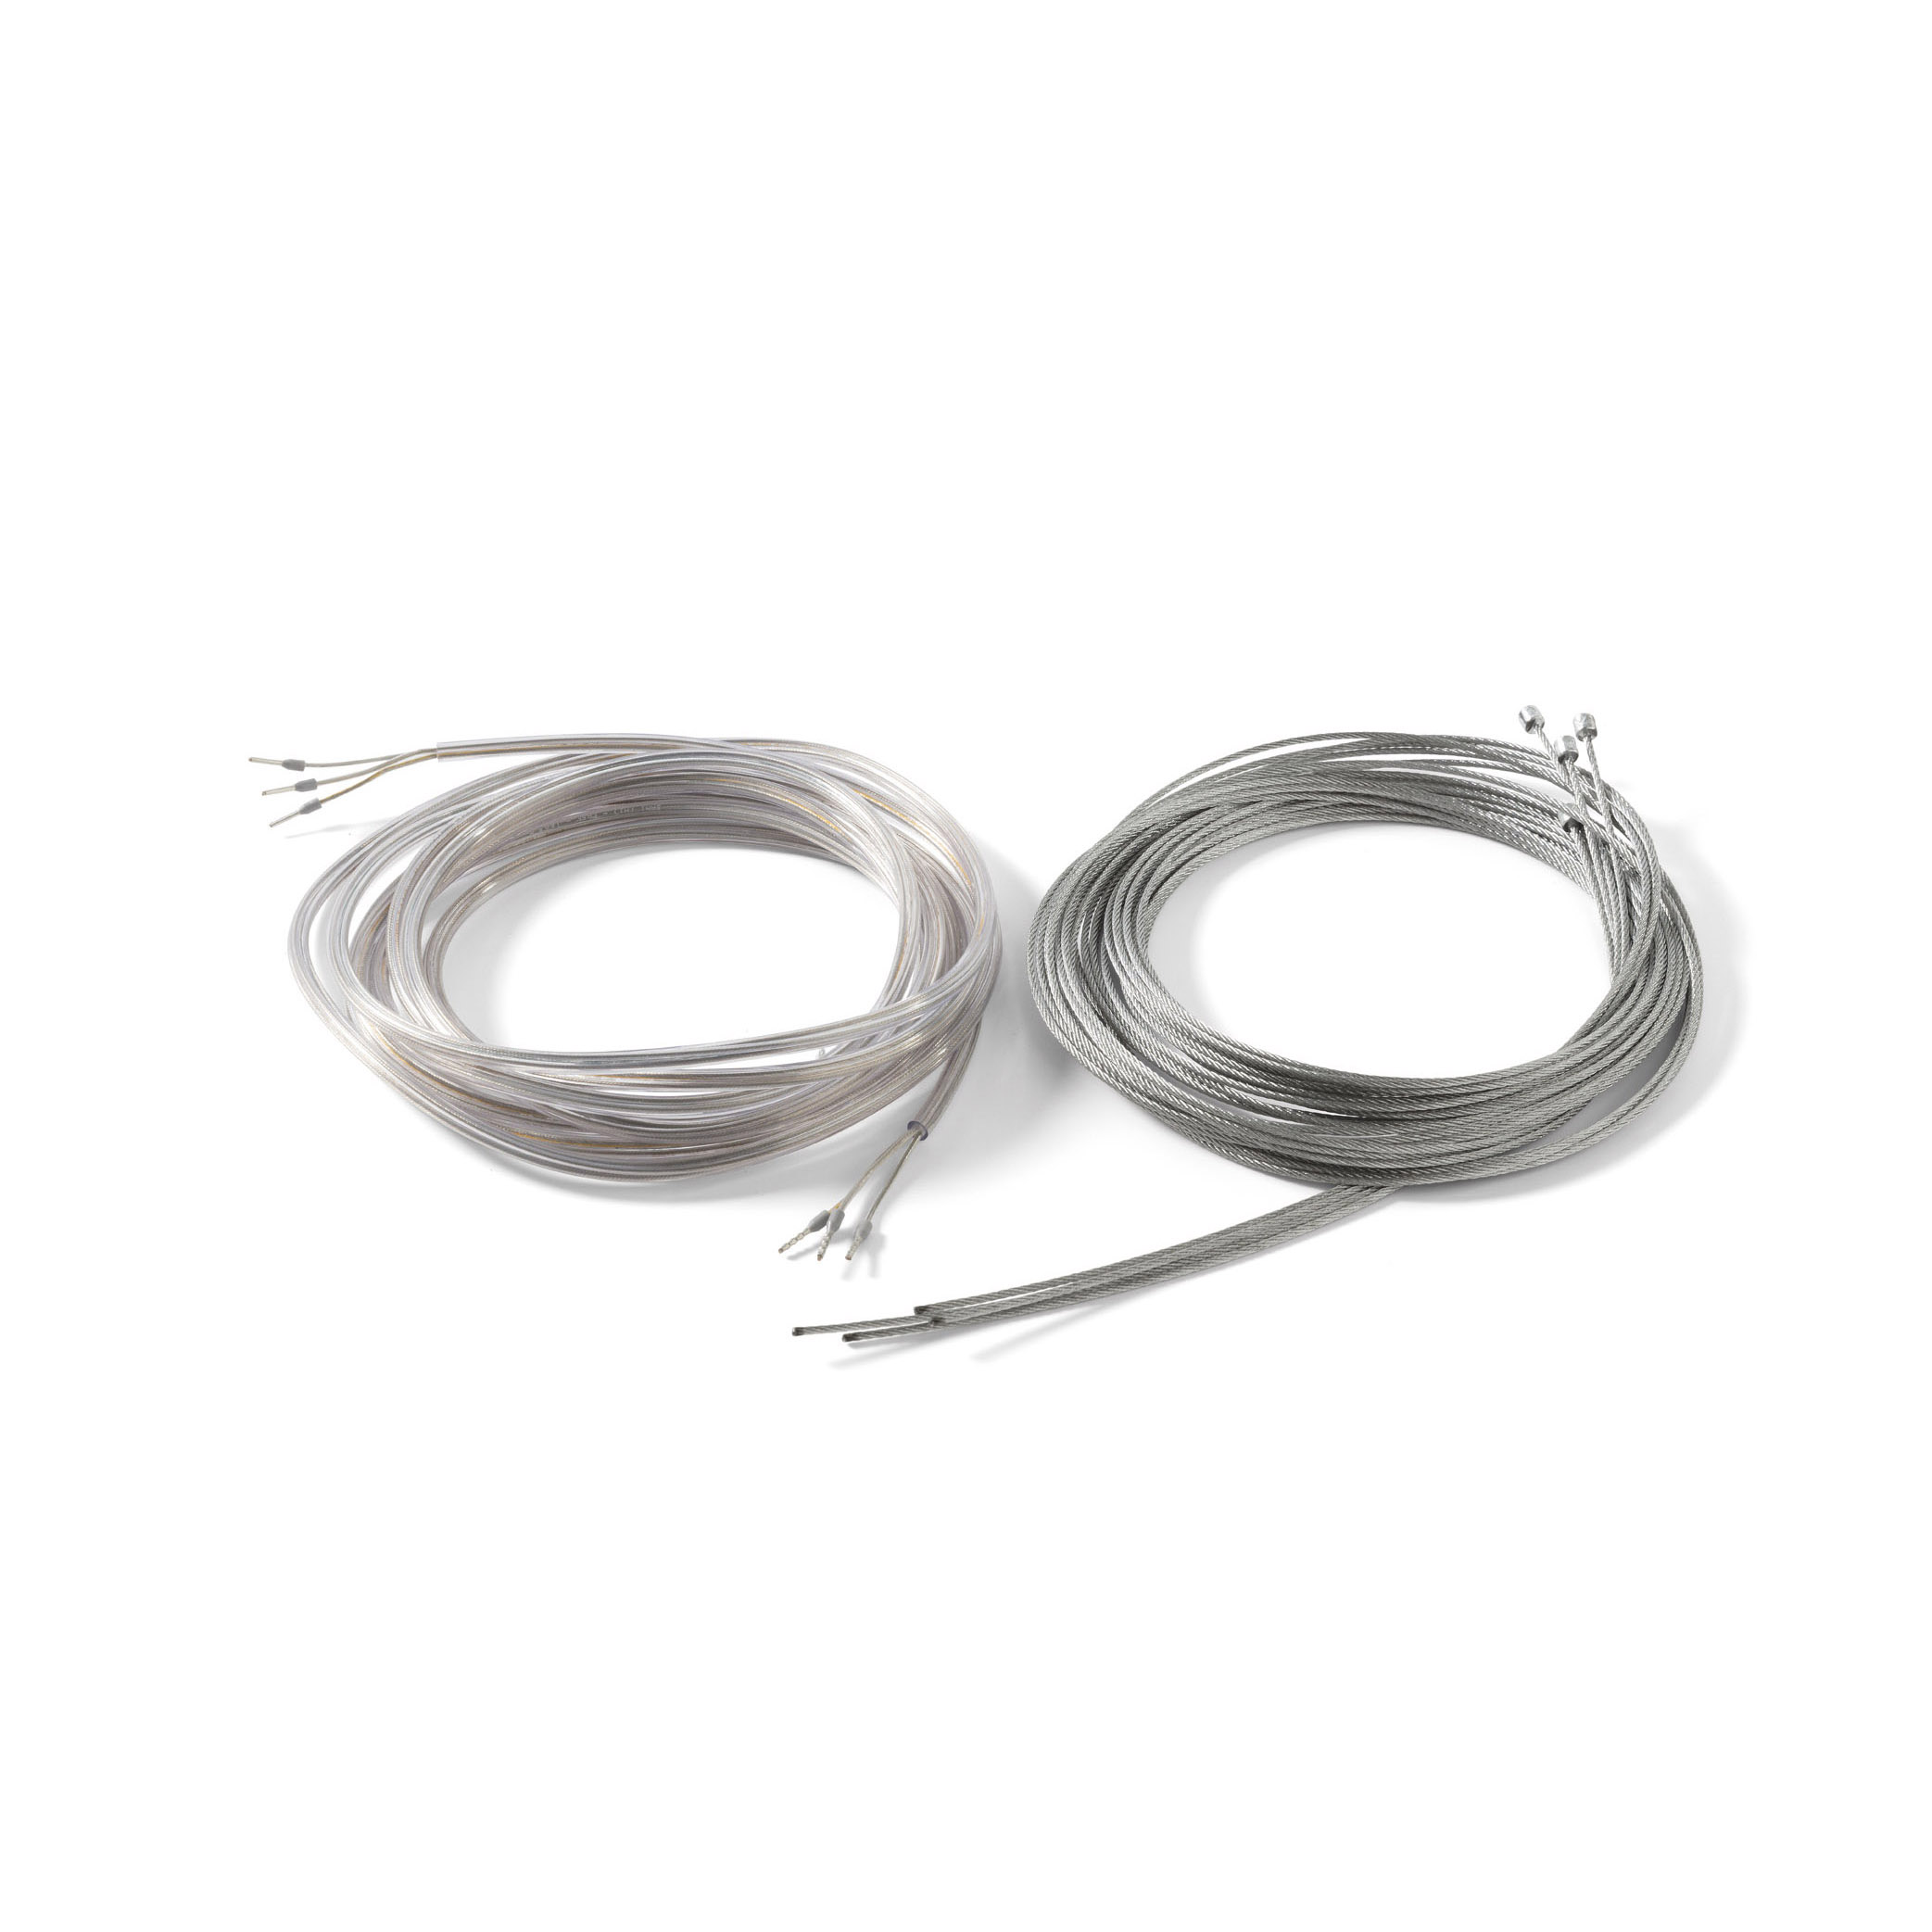 Accessorios 7550100 Alargo cable de acero Novy Mood